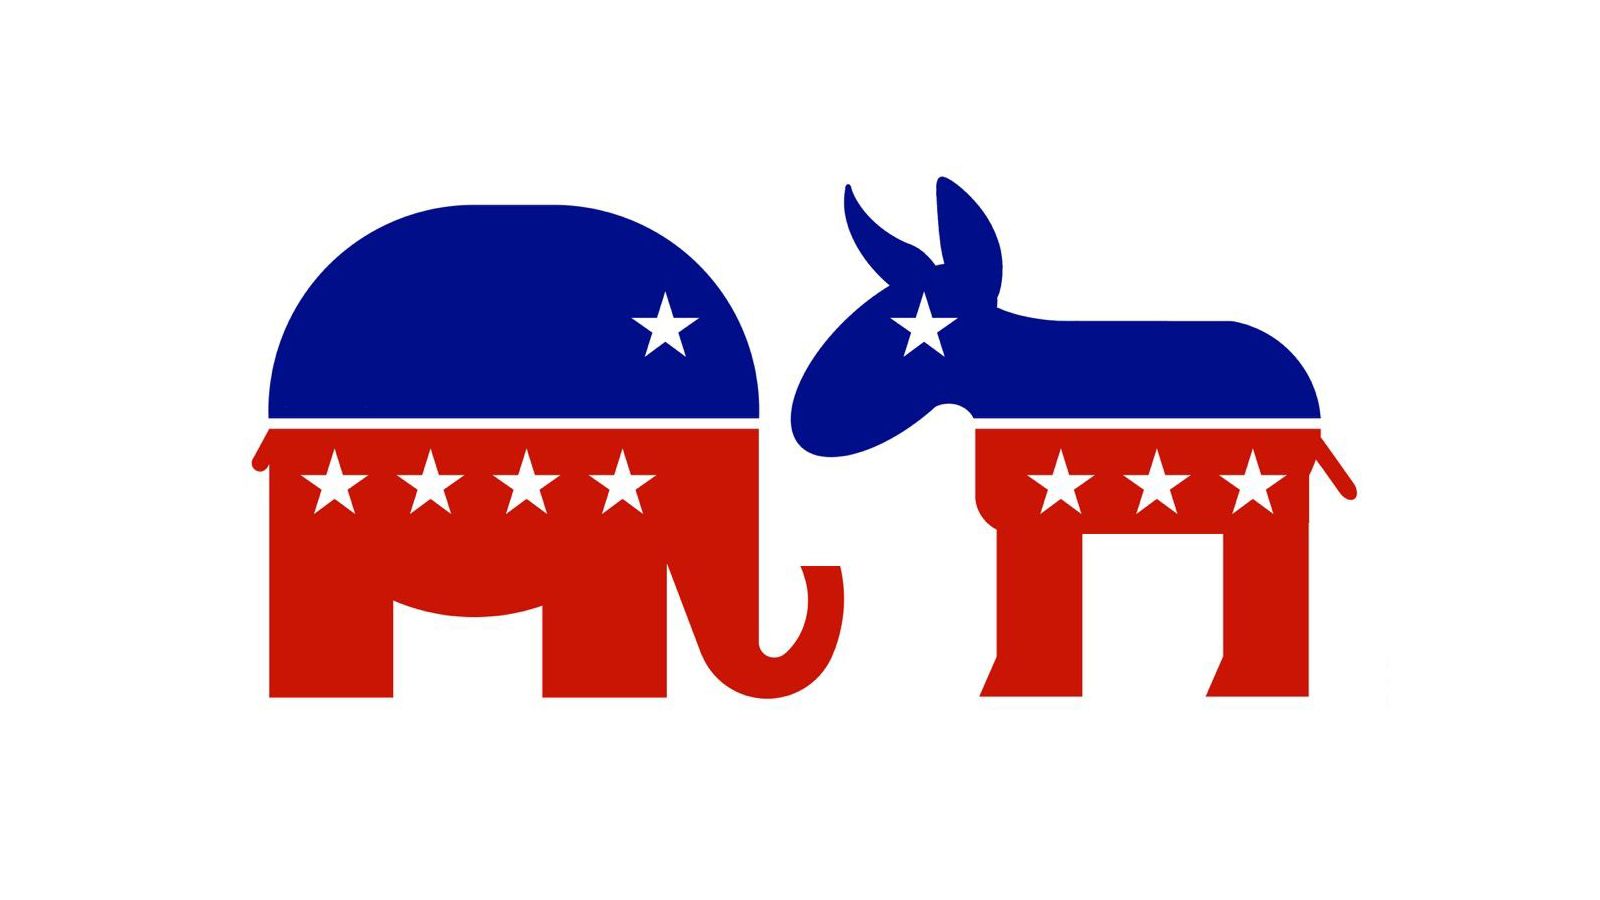 democratic party vs republican party cartoon